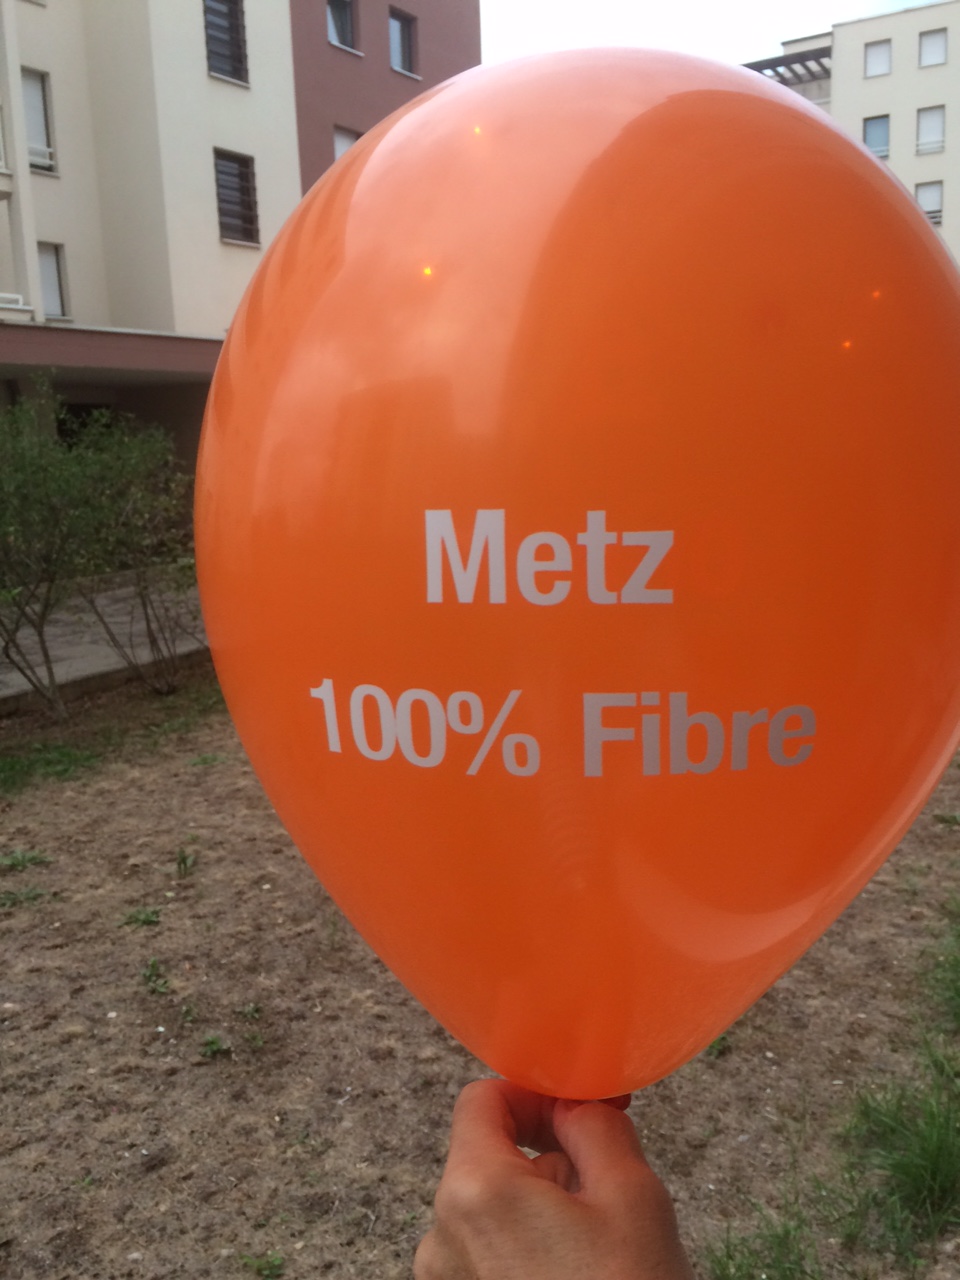 Metz Fibre Animation 500 ballons 2.jpg